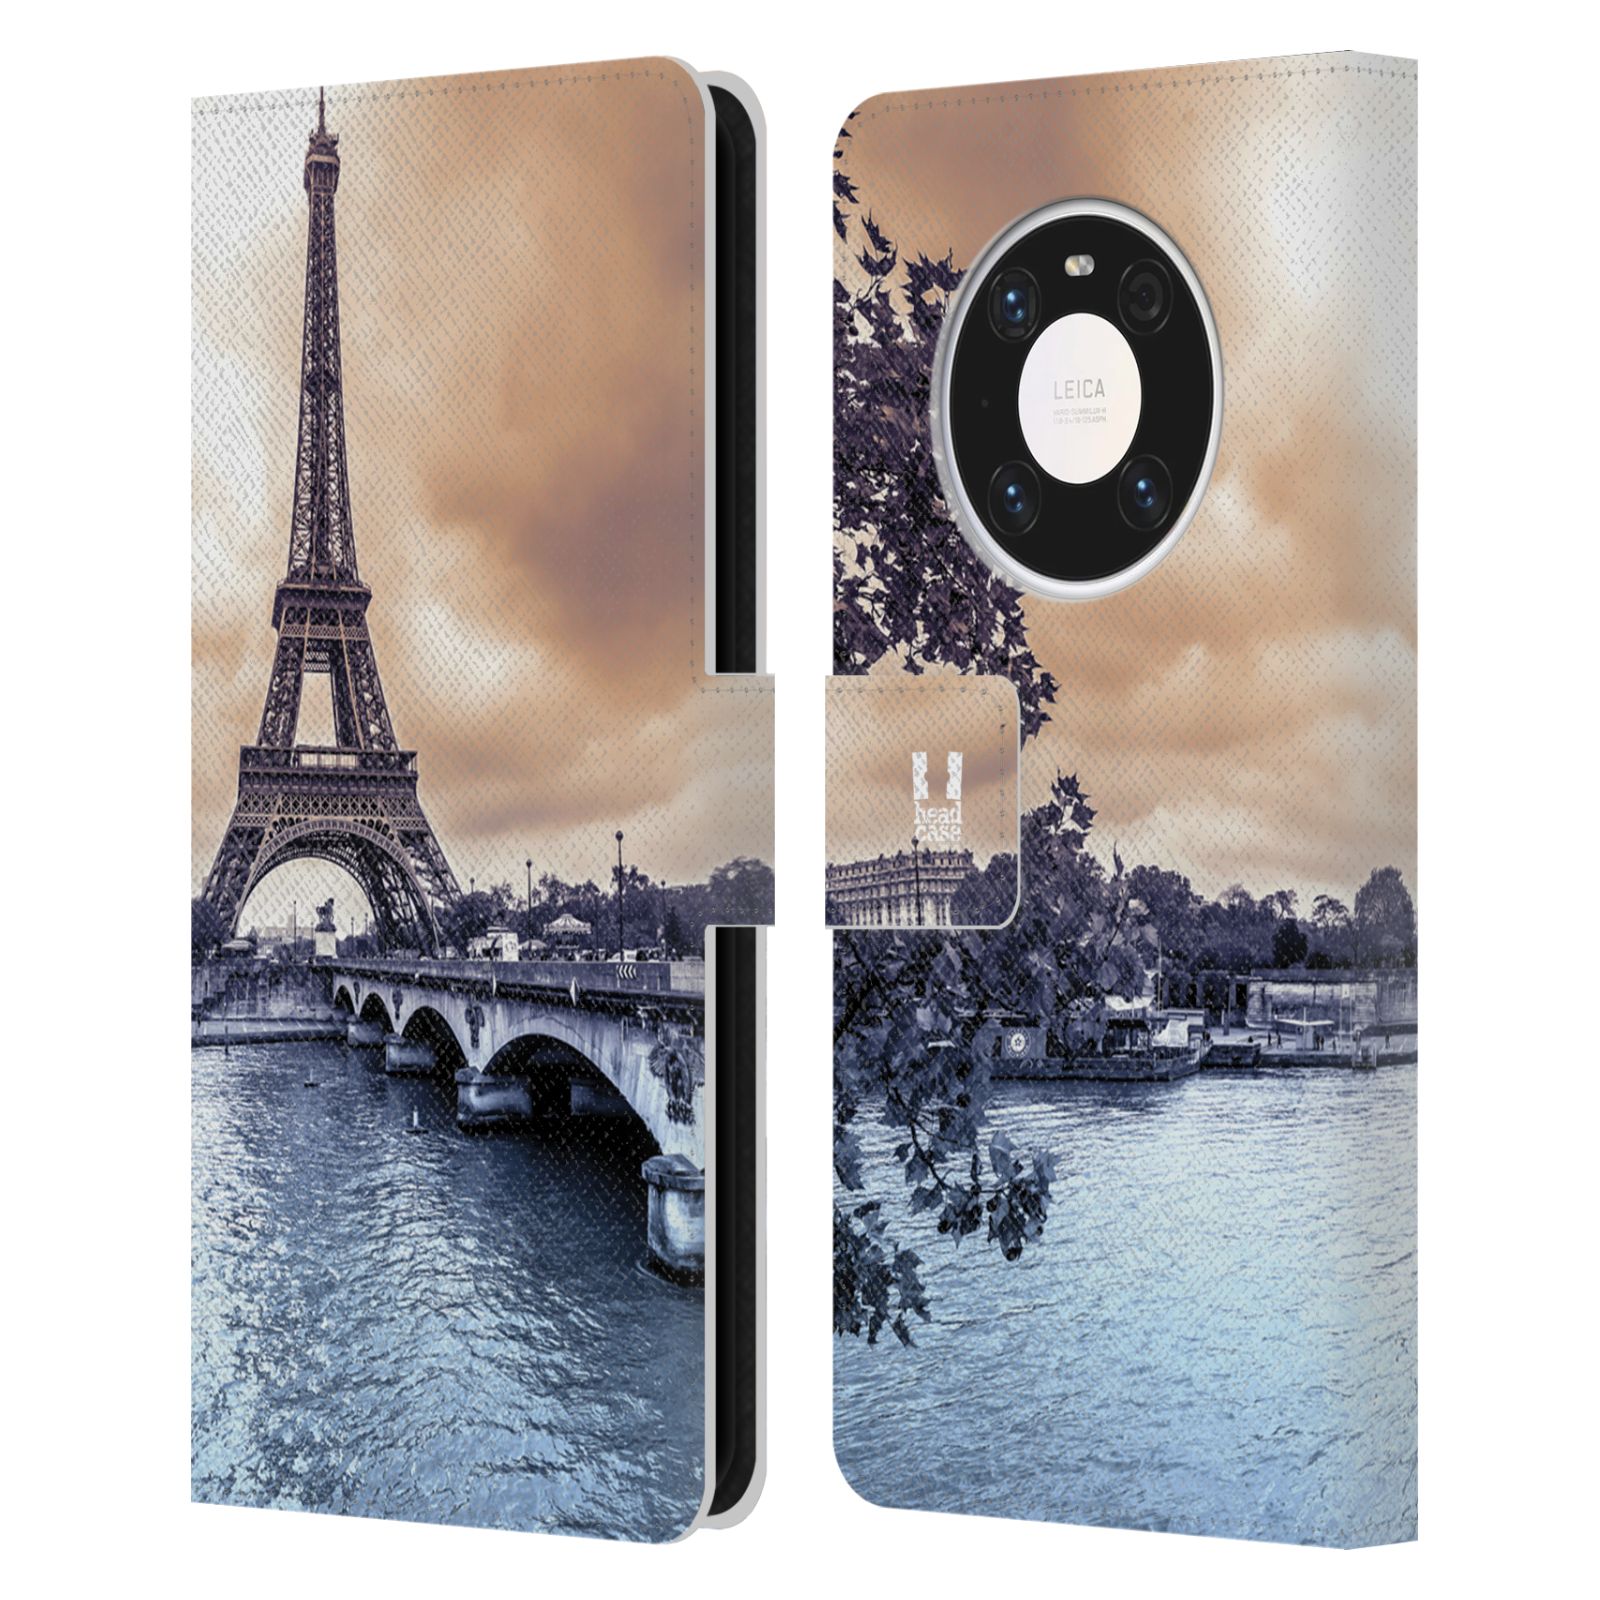 Pouzdro pro mobil Huawei Mate 40 PRO - HEAD CASE - Eiffelova věž Paříž - Francie